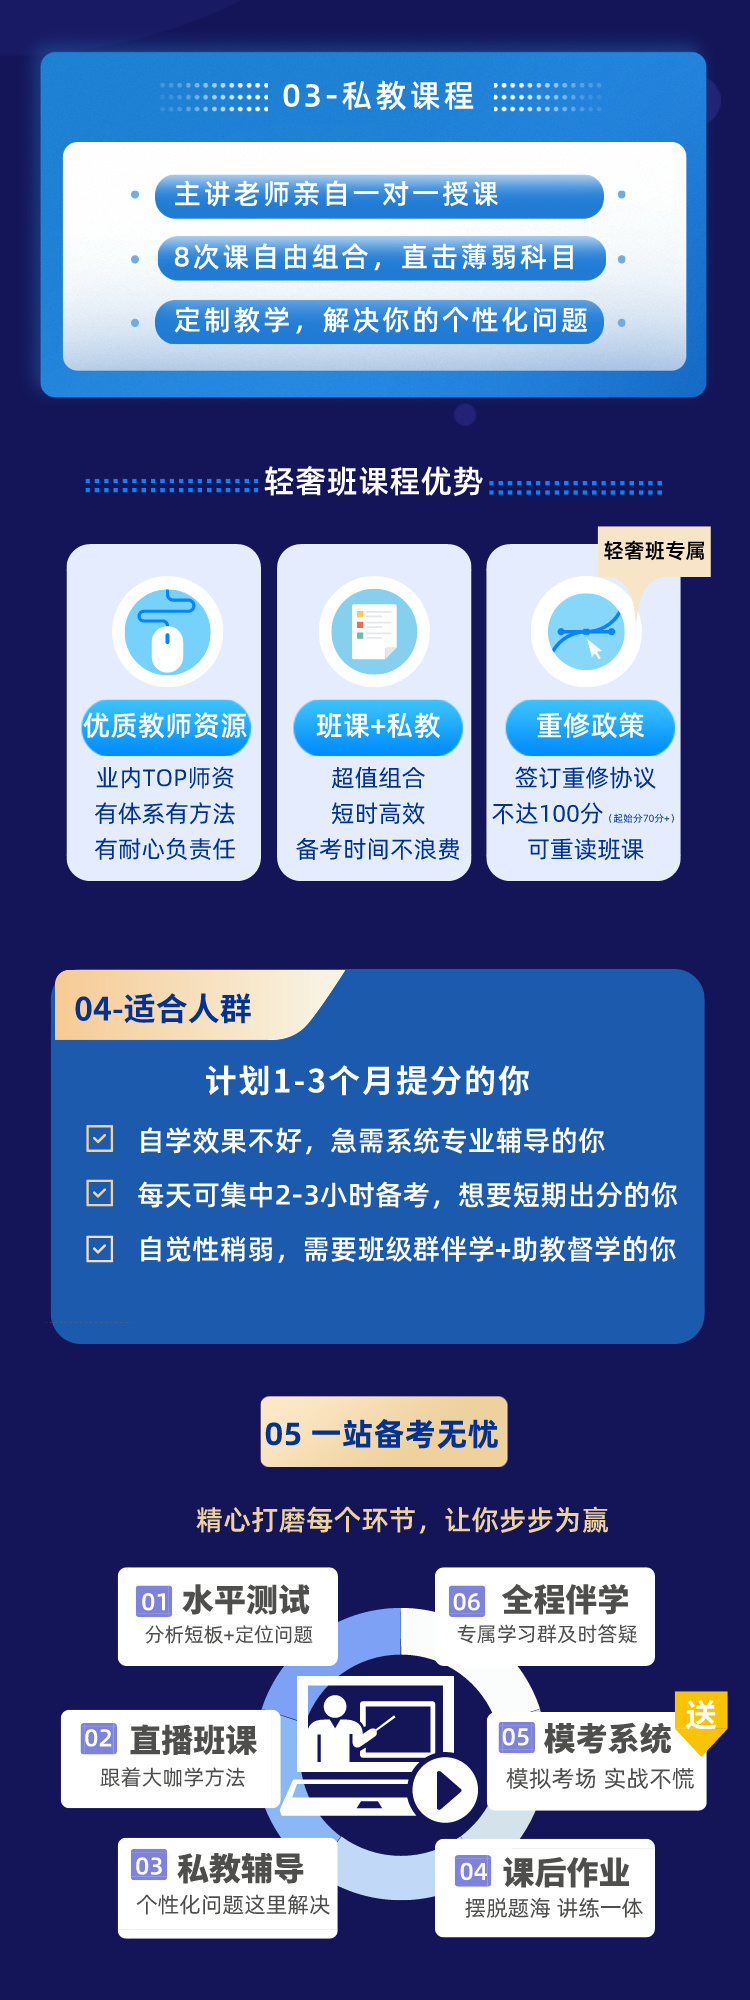 https://simg01.gaodunwangxiao.com/uploadfiles/product-center/202403/01/a0d4b_20240301175933.jpeg